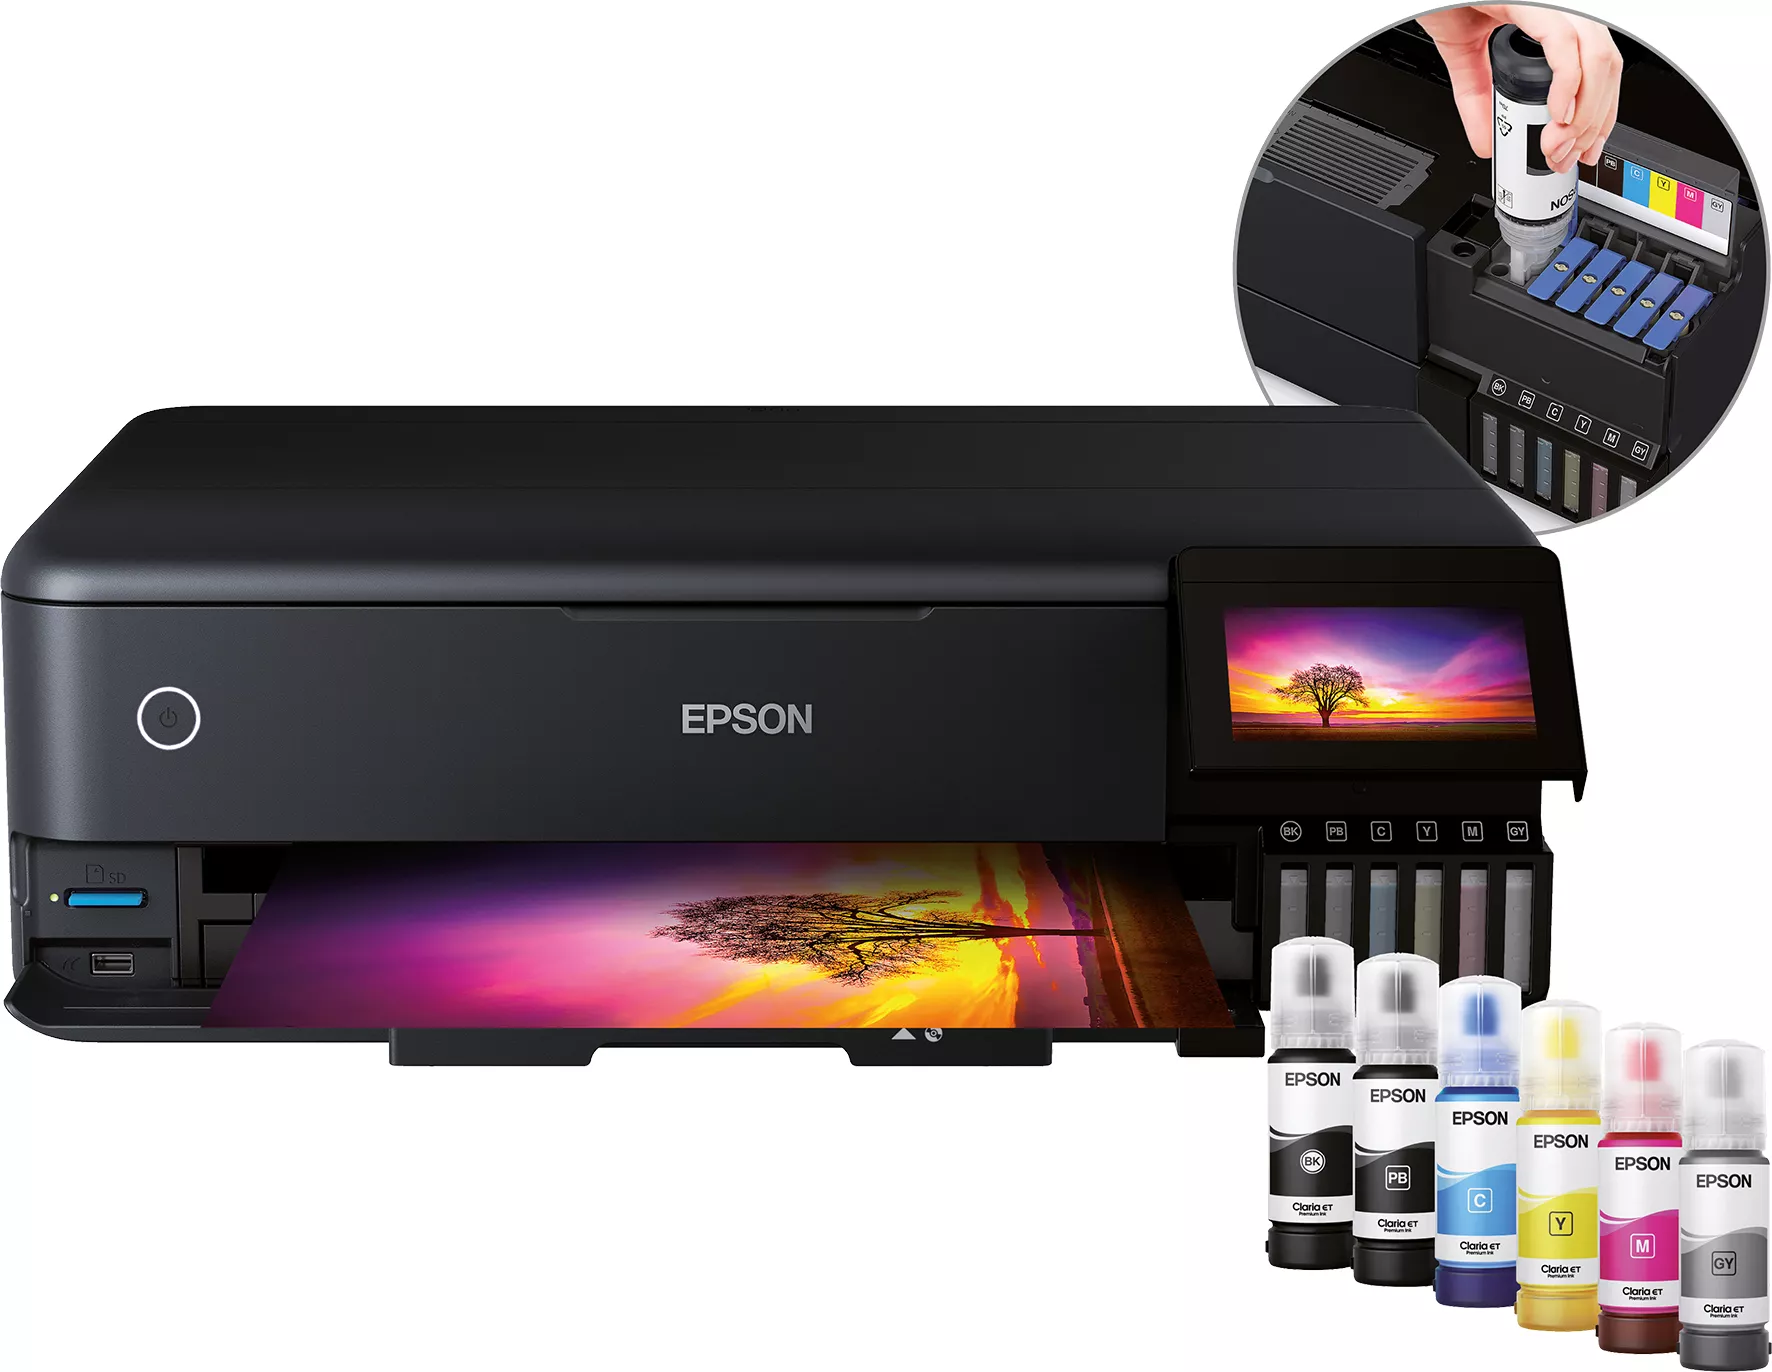 Vente EPSON EcoTank ET-8550 Multifunctional Inkjet A3+ 16/12 Epson au meilleur prix - visuel 2